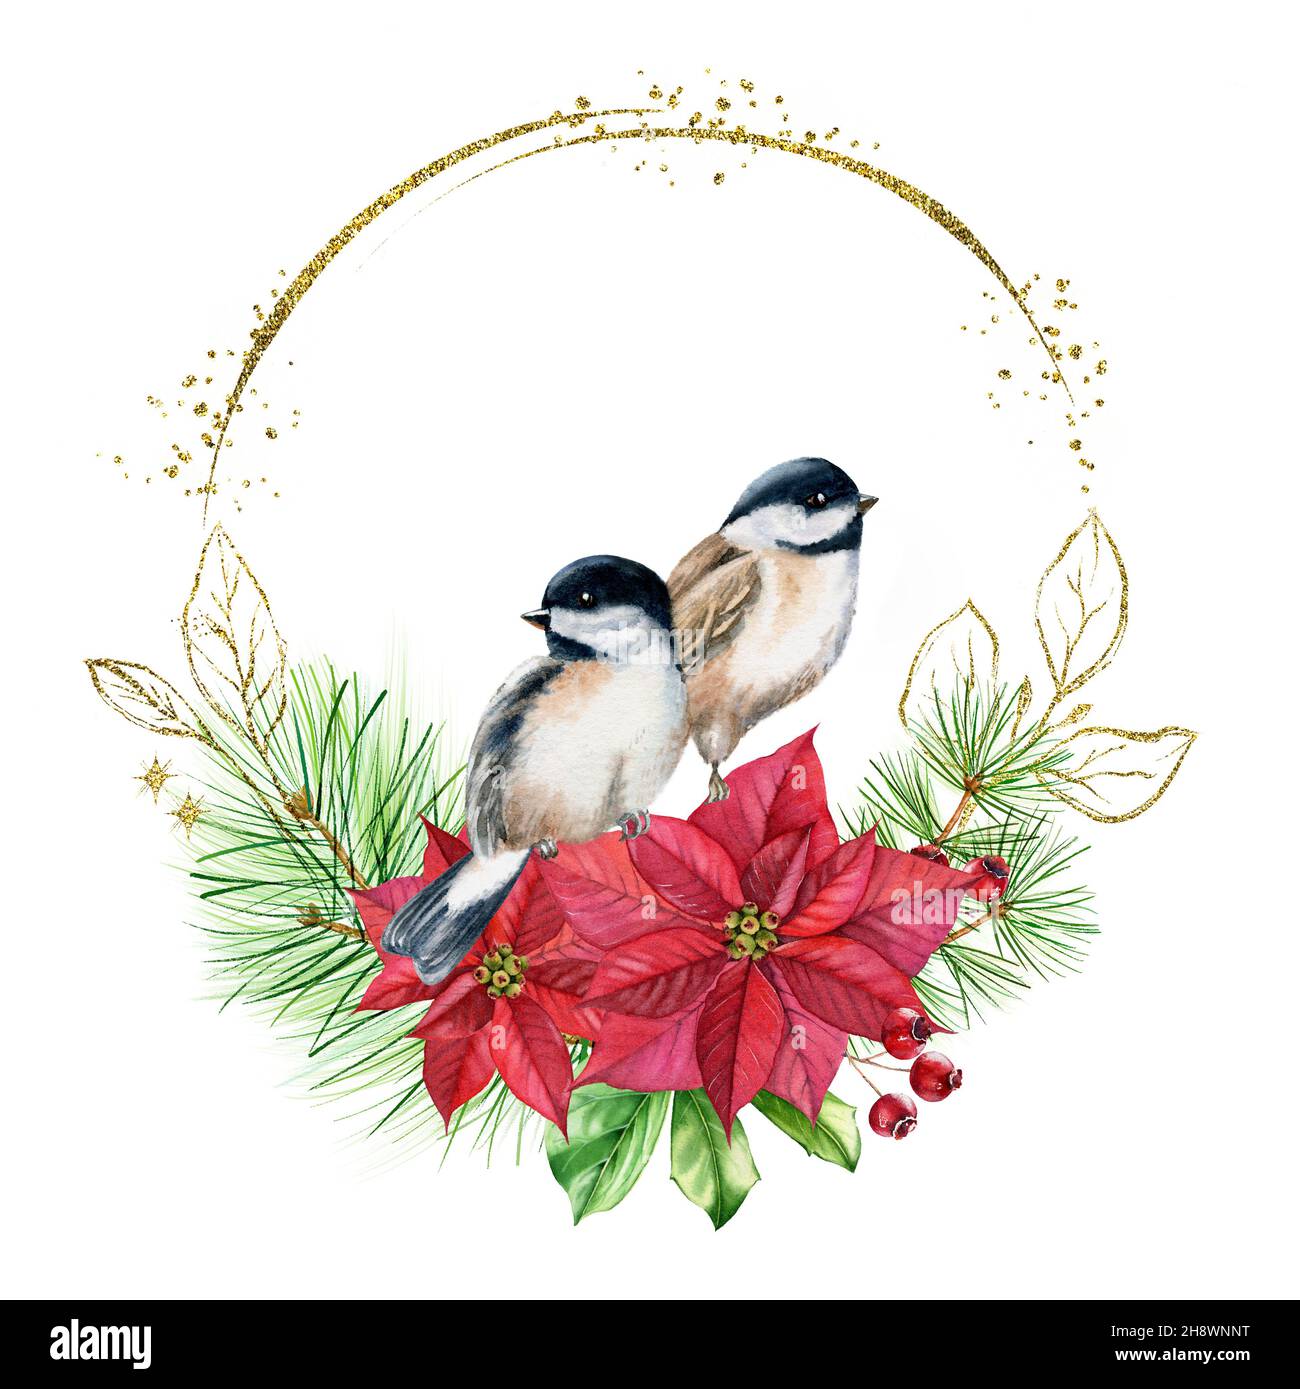 Corona di Natale con uccelli sul bouquet con fiori rossi. Cartolina acquerello con pino, poinsettia, lamina dorata con glitter. Floreale botanico Foto Stock